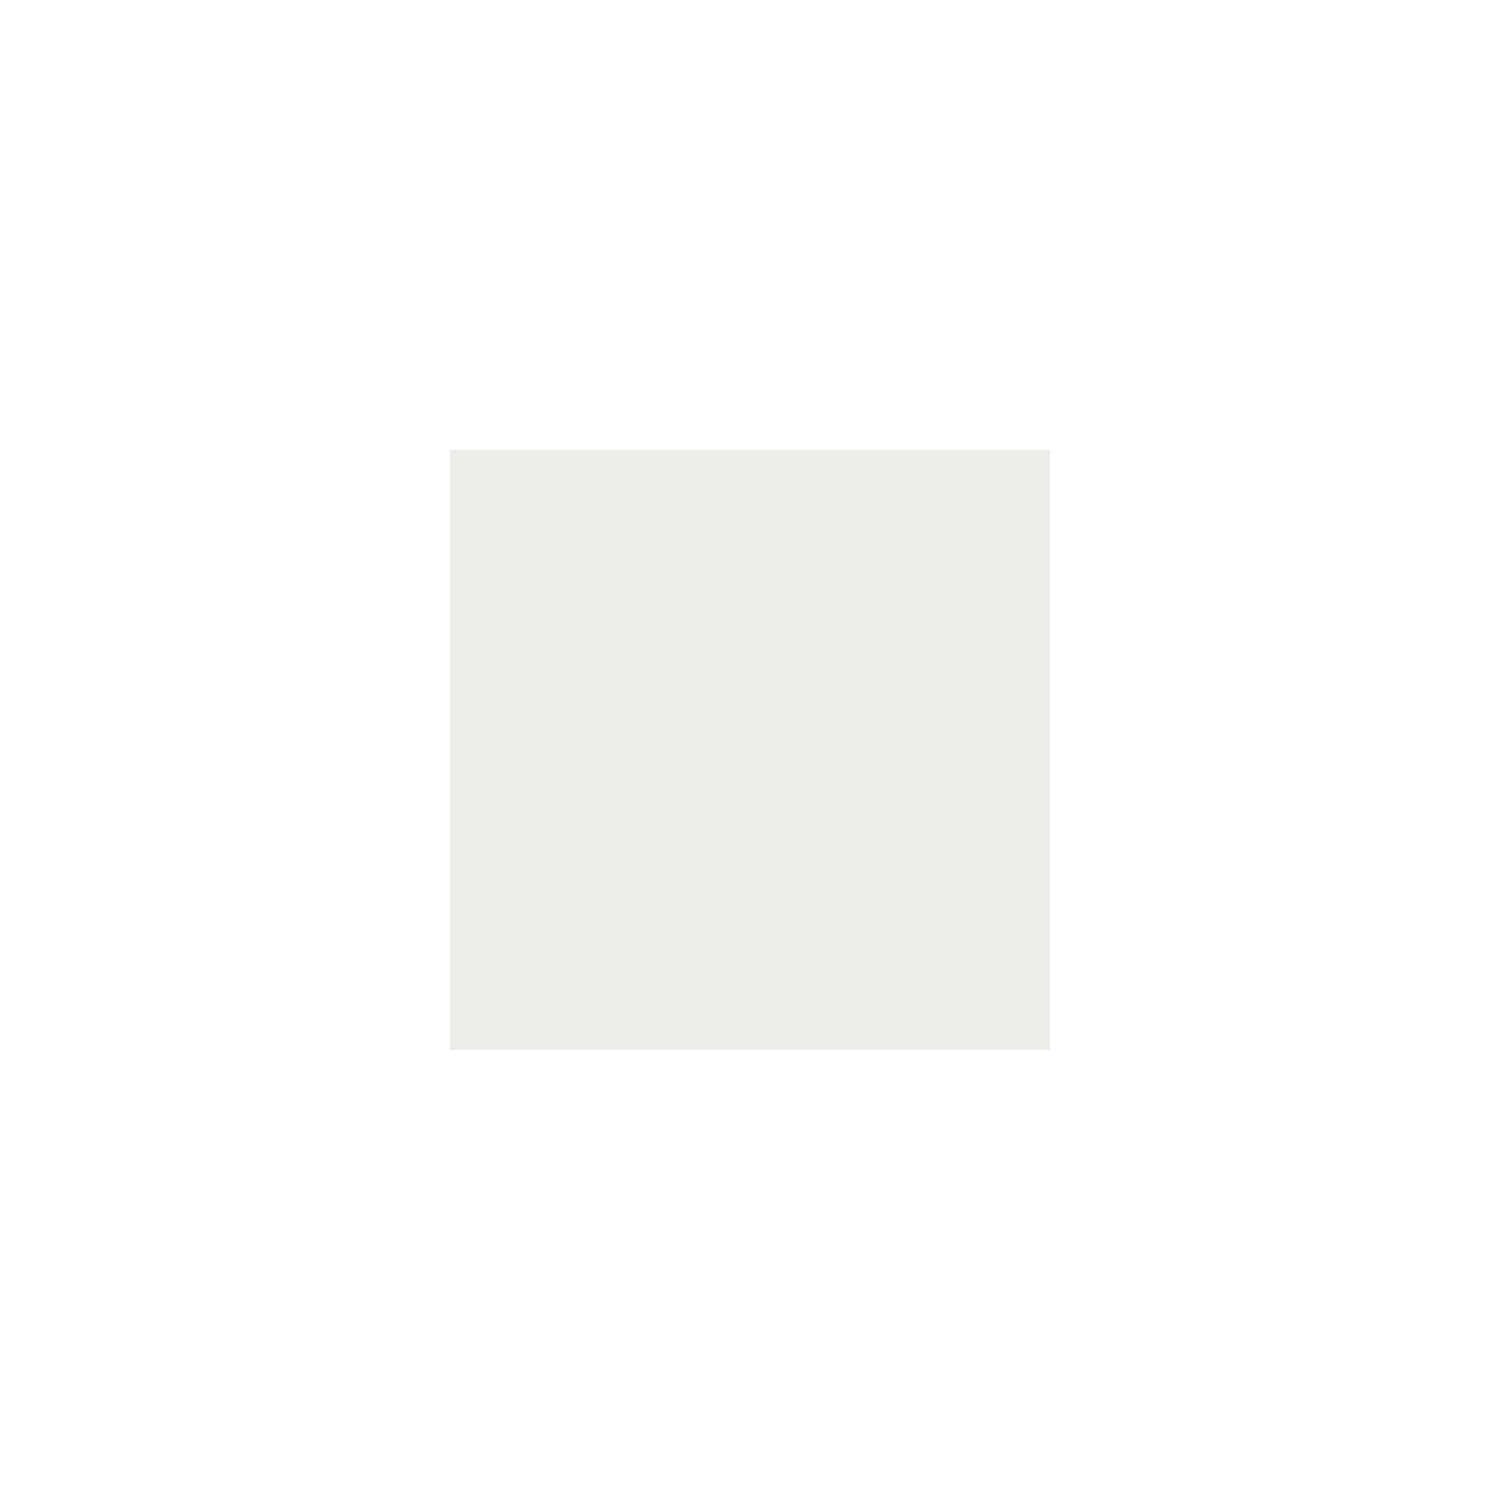 Itamoby Consolle allungabile 90x40/300 cm Diago Noce telaio Bianco